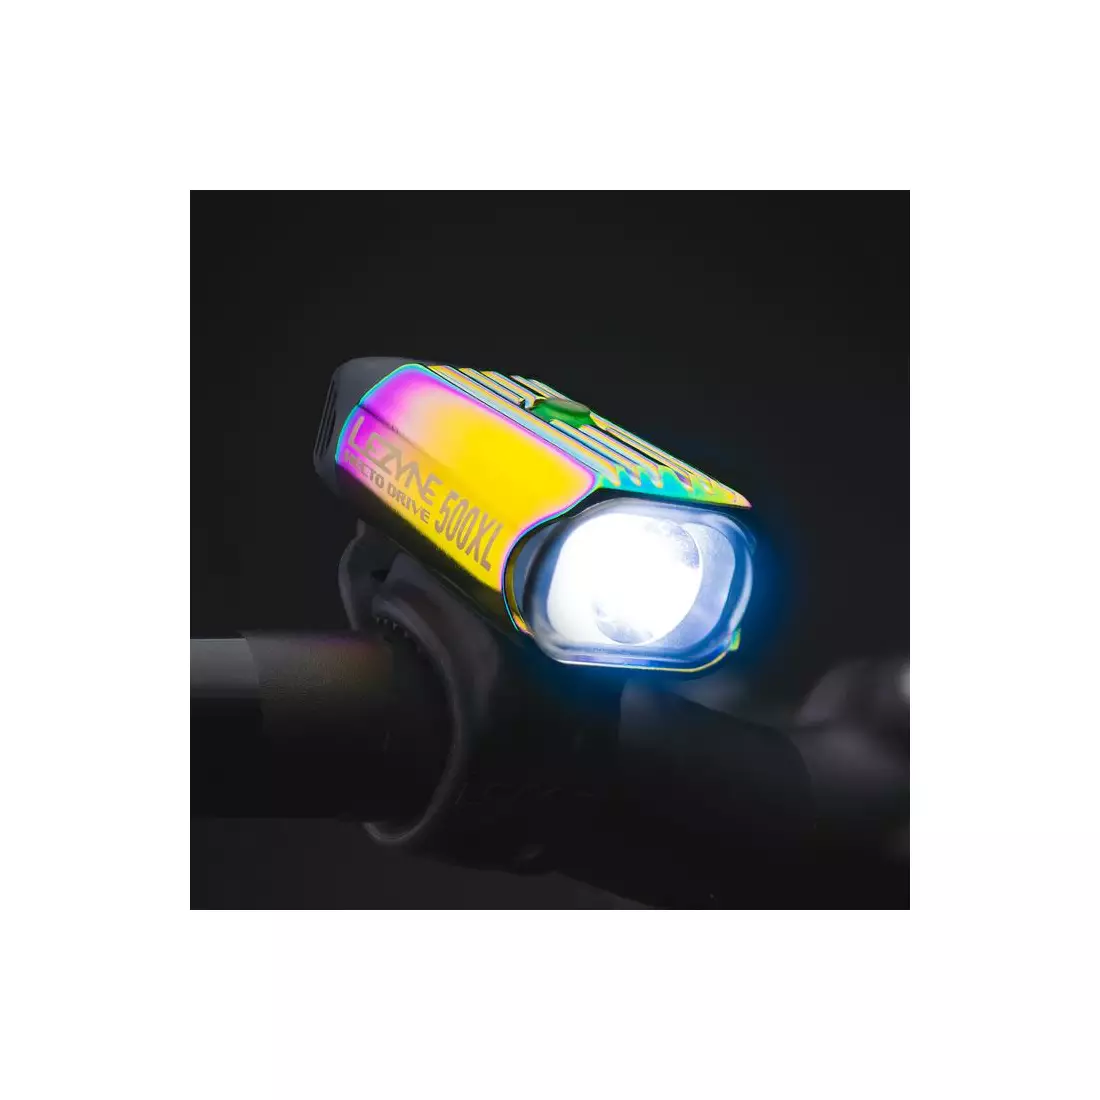 LEZYNE přední cyklistická lampa LED HECTO DRIVE 500XL neo metallic LZN-1-LED-9F-V530